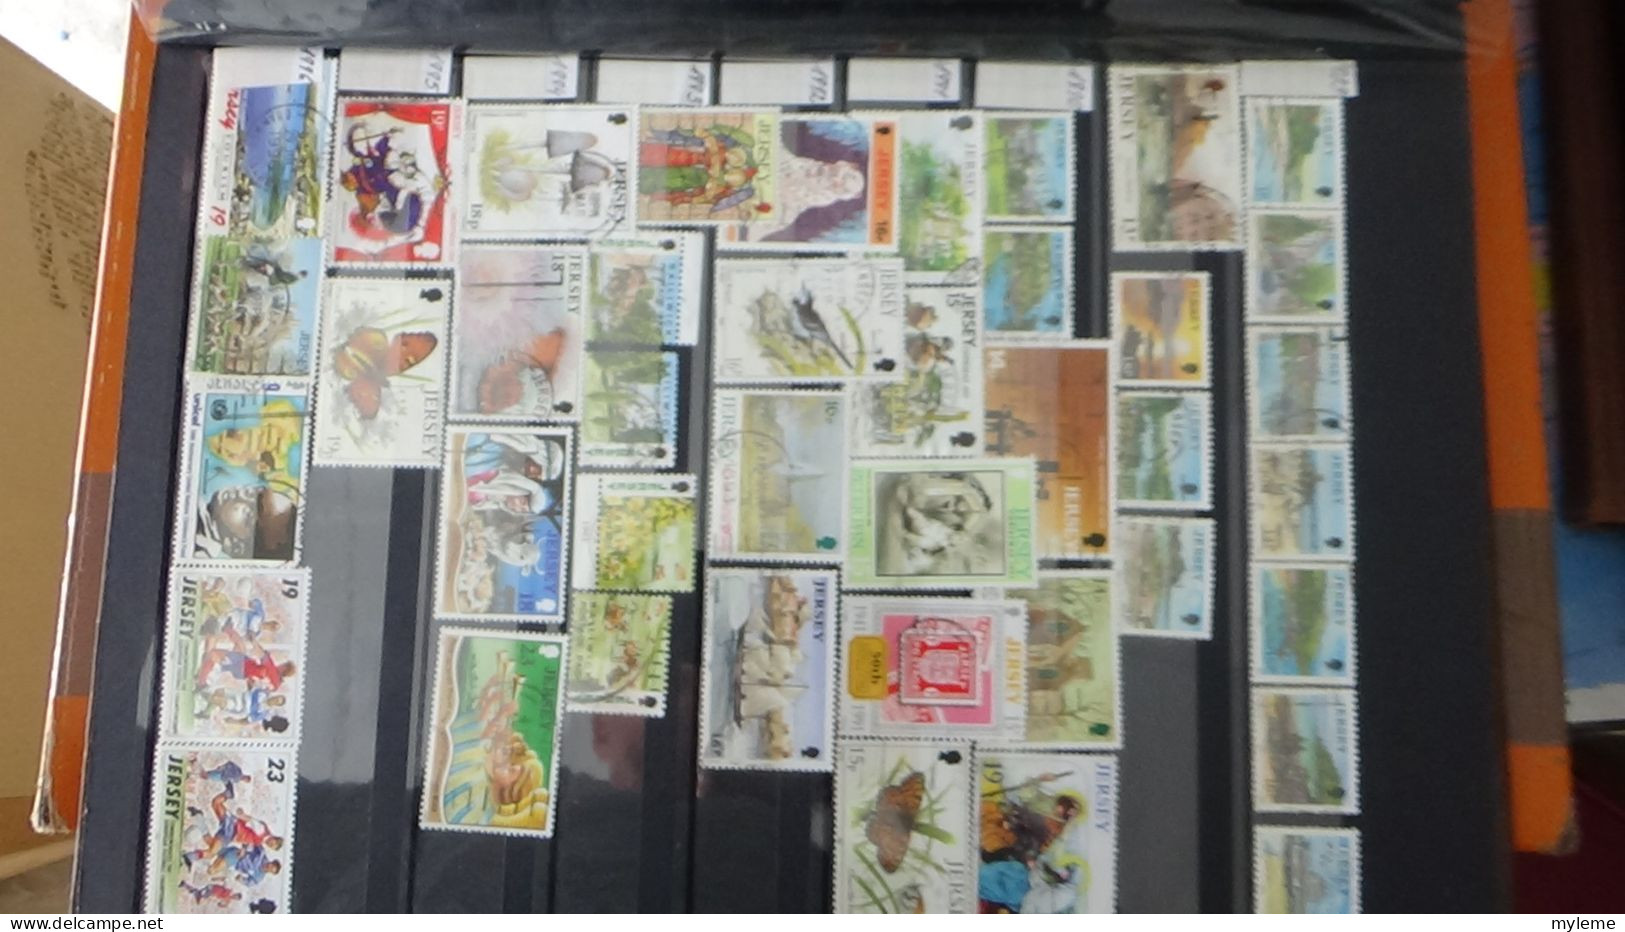 BF23 Ensemble de timbres de divers pays + bloc PEXIP N° 3 oblitéré. Petites taches hors timbres qui sont **. Signé